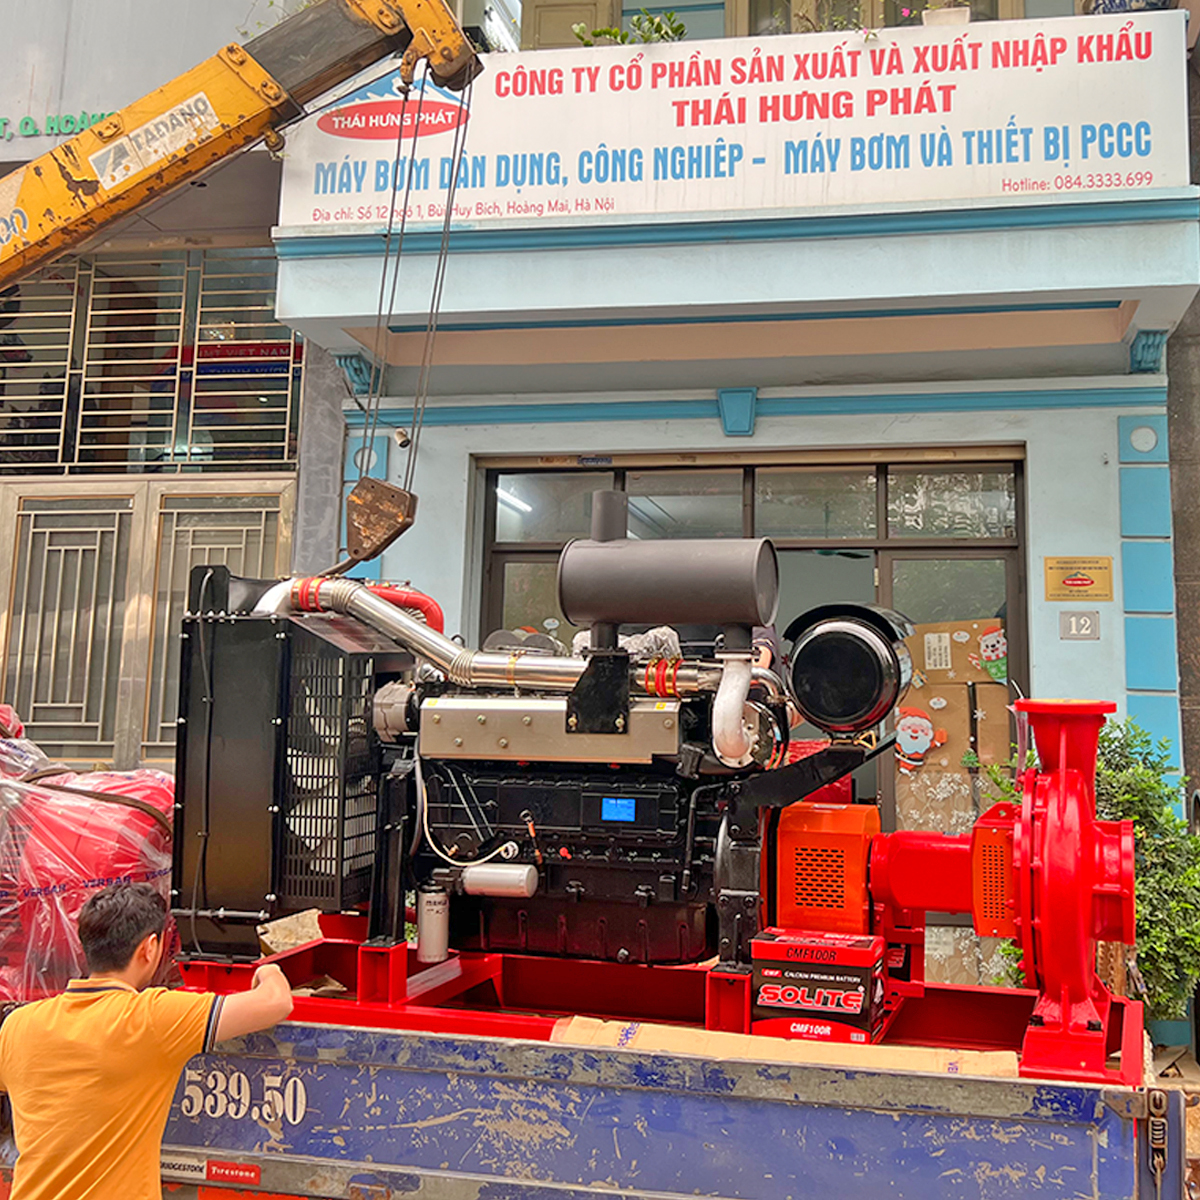 Cửa hàng máy bơm cứu hỏa uy tín tại Hà Nội | Thái Hưng Phát